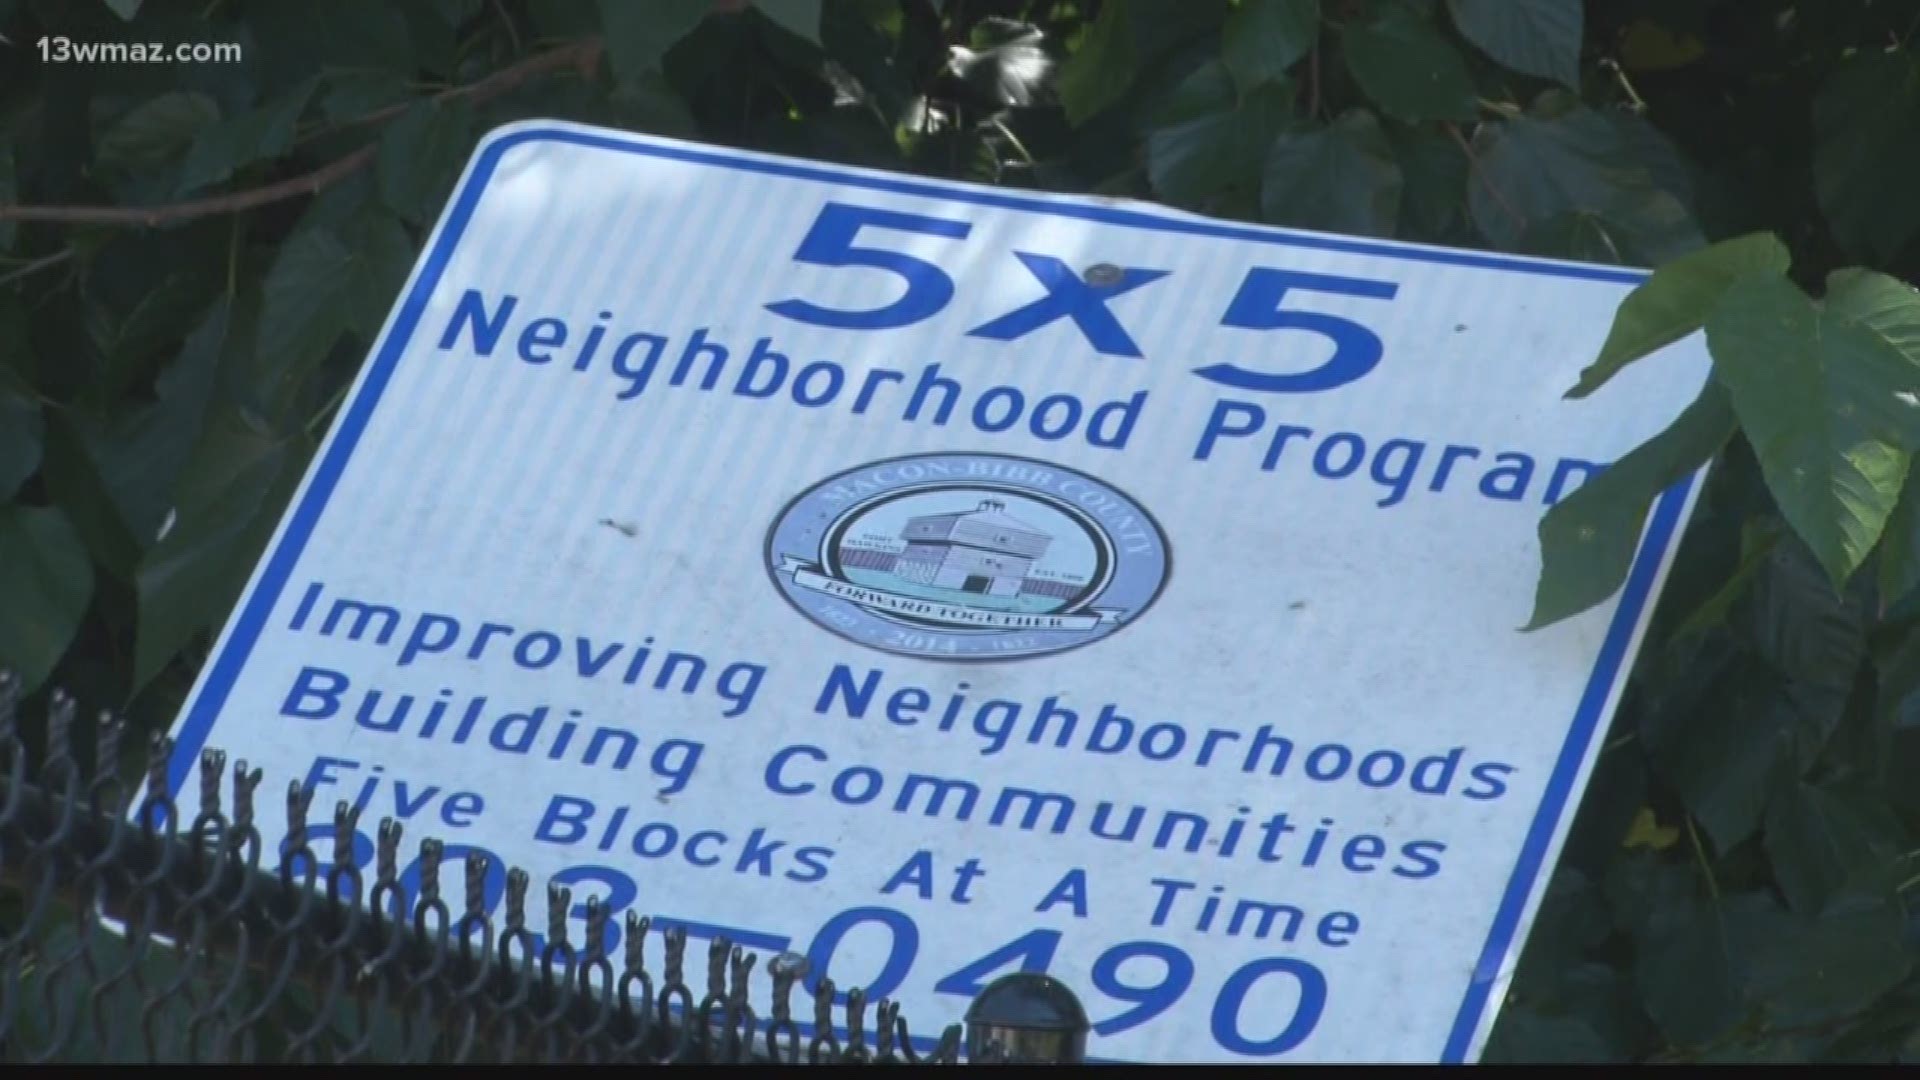 How neighborhood watch programs impact crime